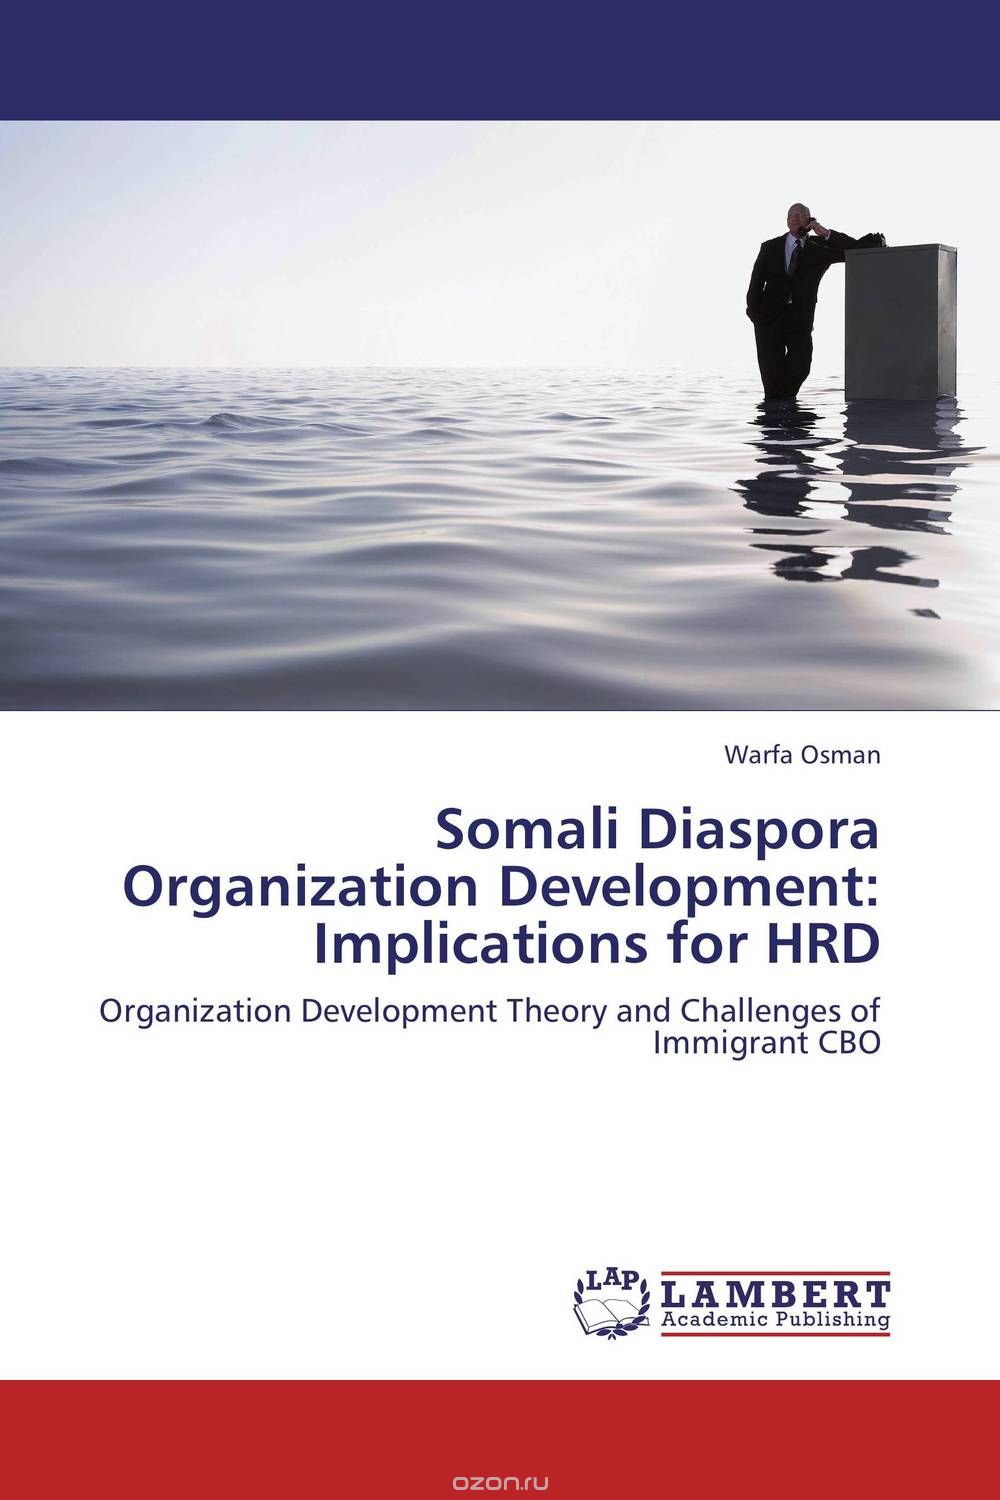 Скачать книгу "Somali Diaspora Organization Development: Implications for HRD"